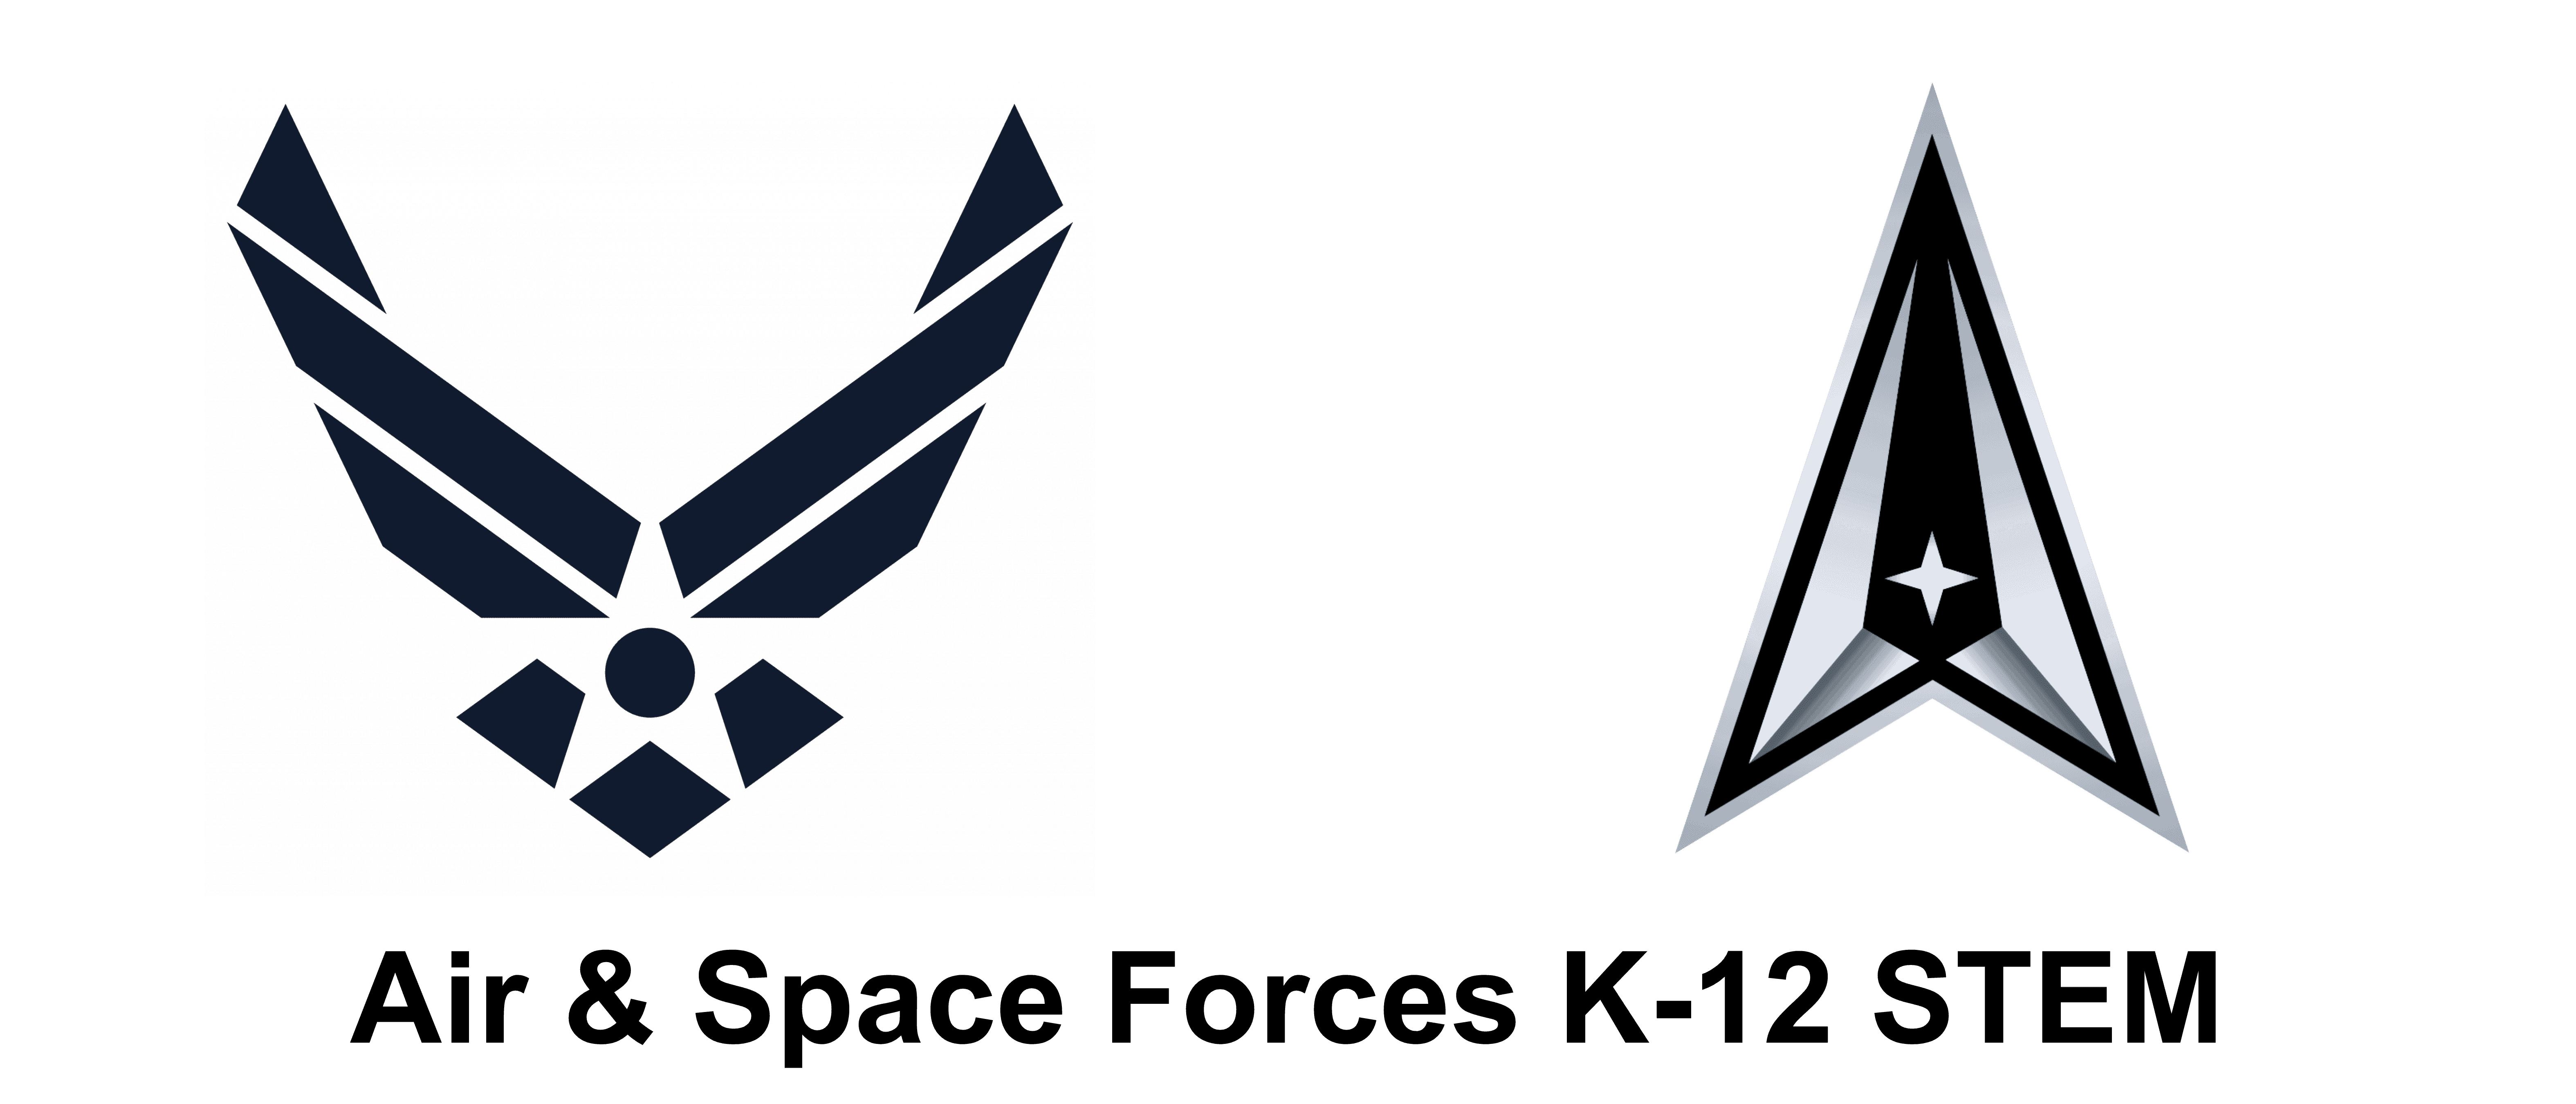 Air & Space Force K-12 STEM logo.png